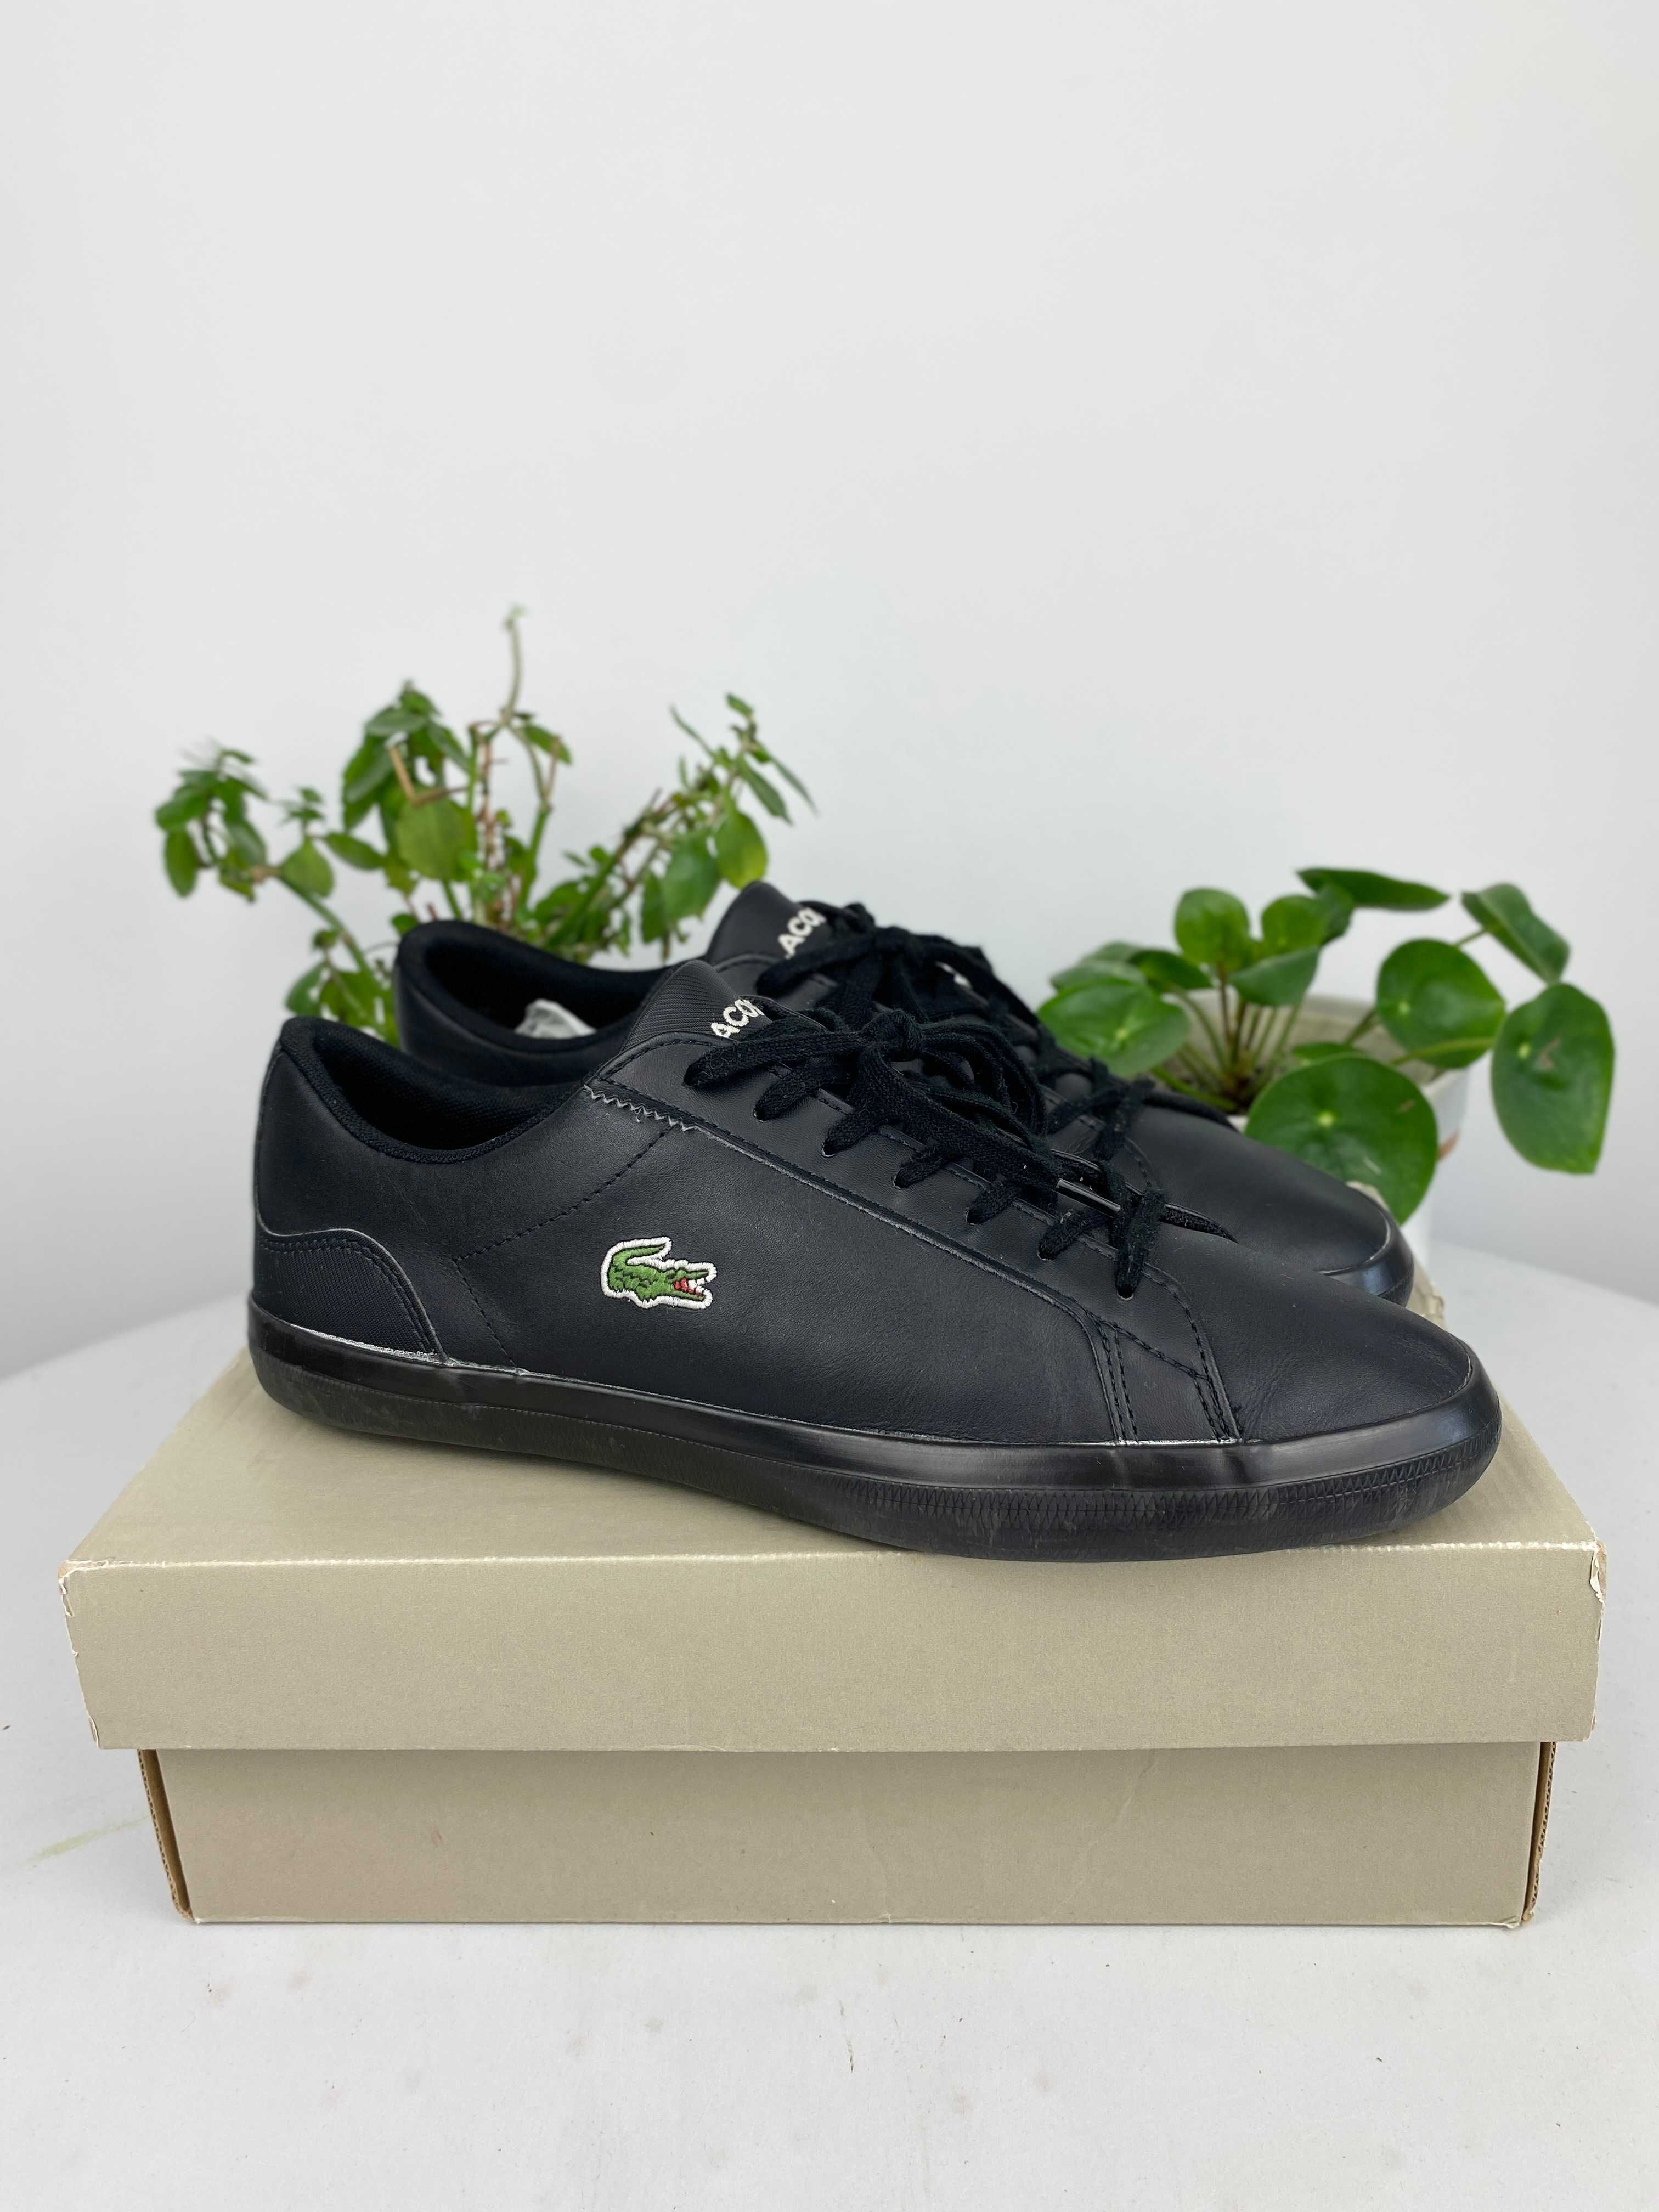 czarne buty sneakersy lacoste Lerond 0120 1 Cma r. 42 n155